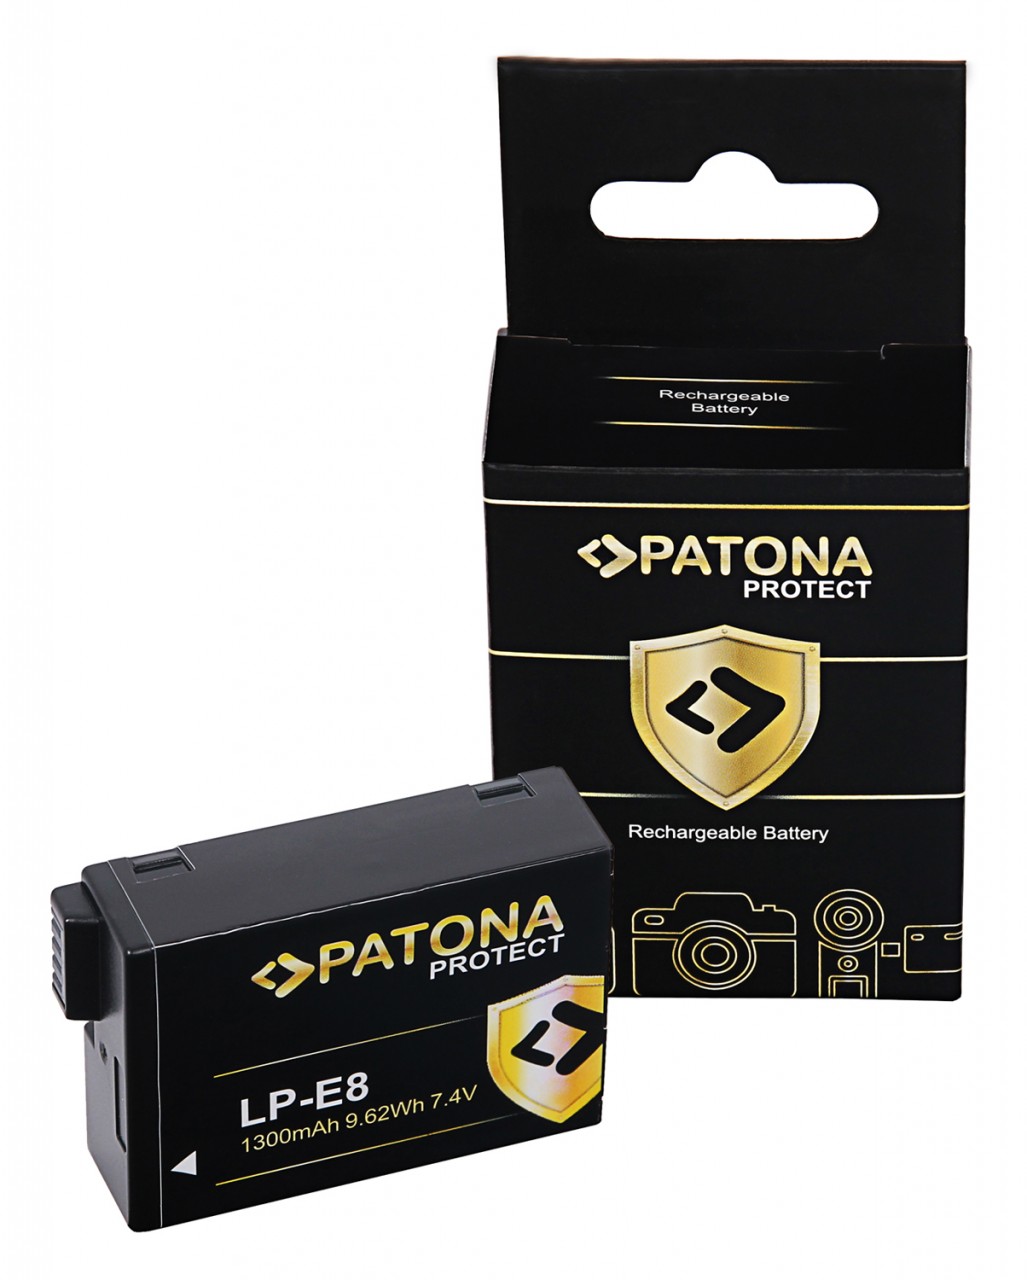 PROTECT Battery Canon EOS 550D 600D 650D 700D LPE8 LP-E8 LP-E8+